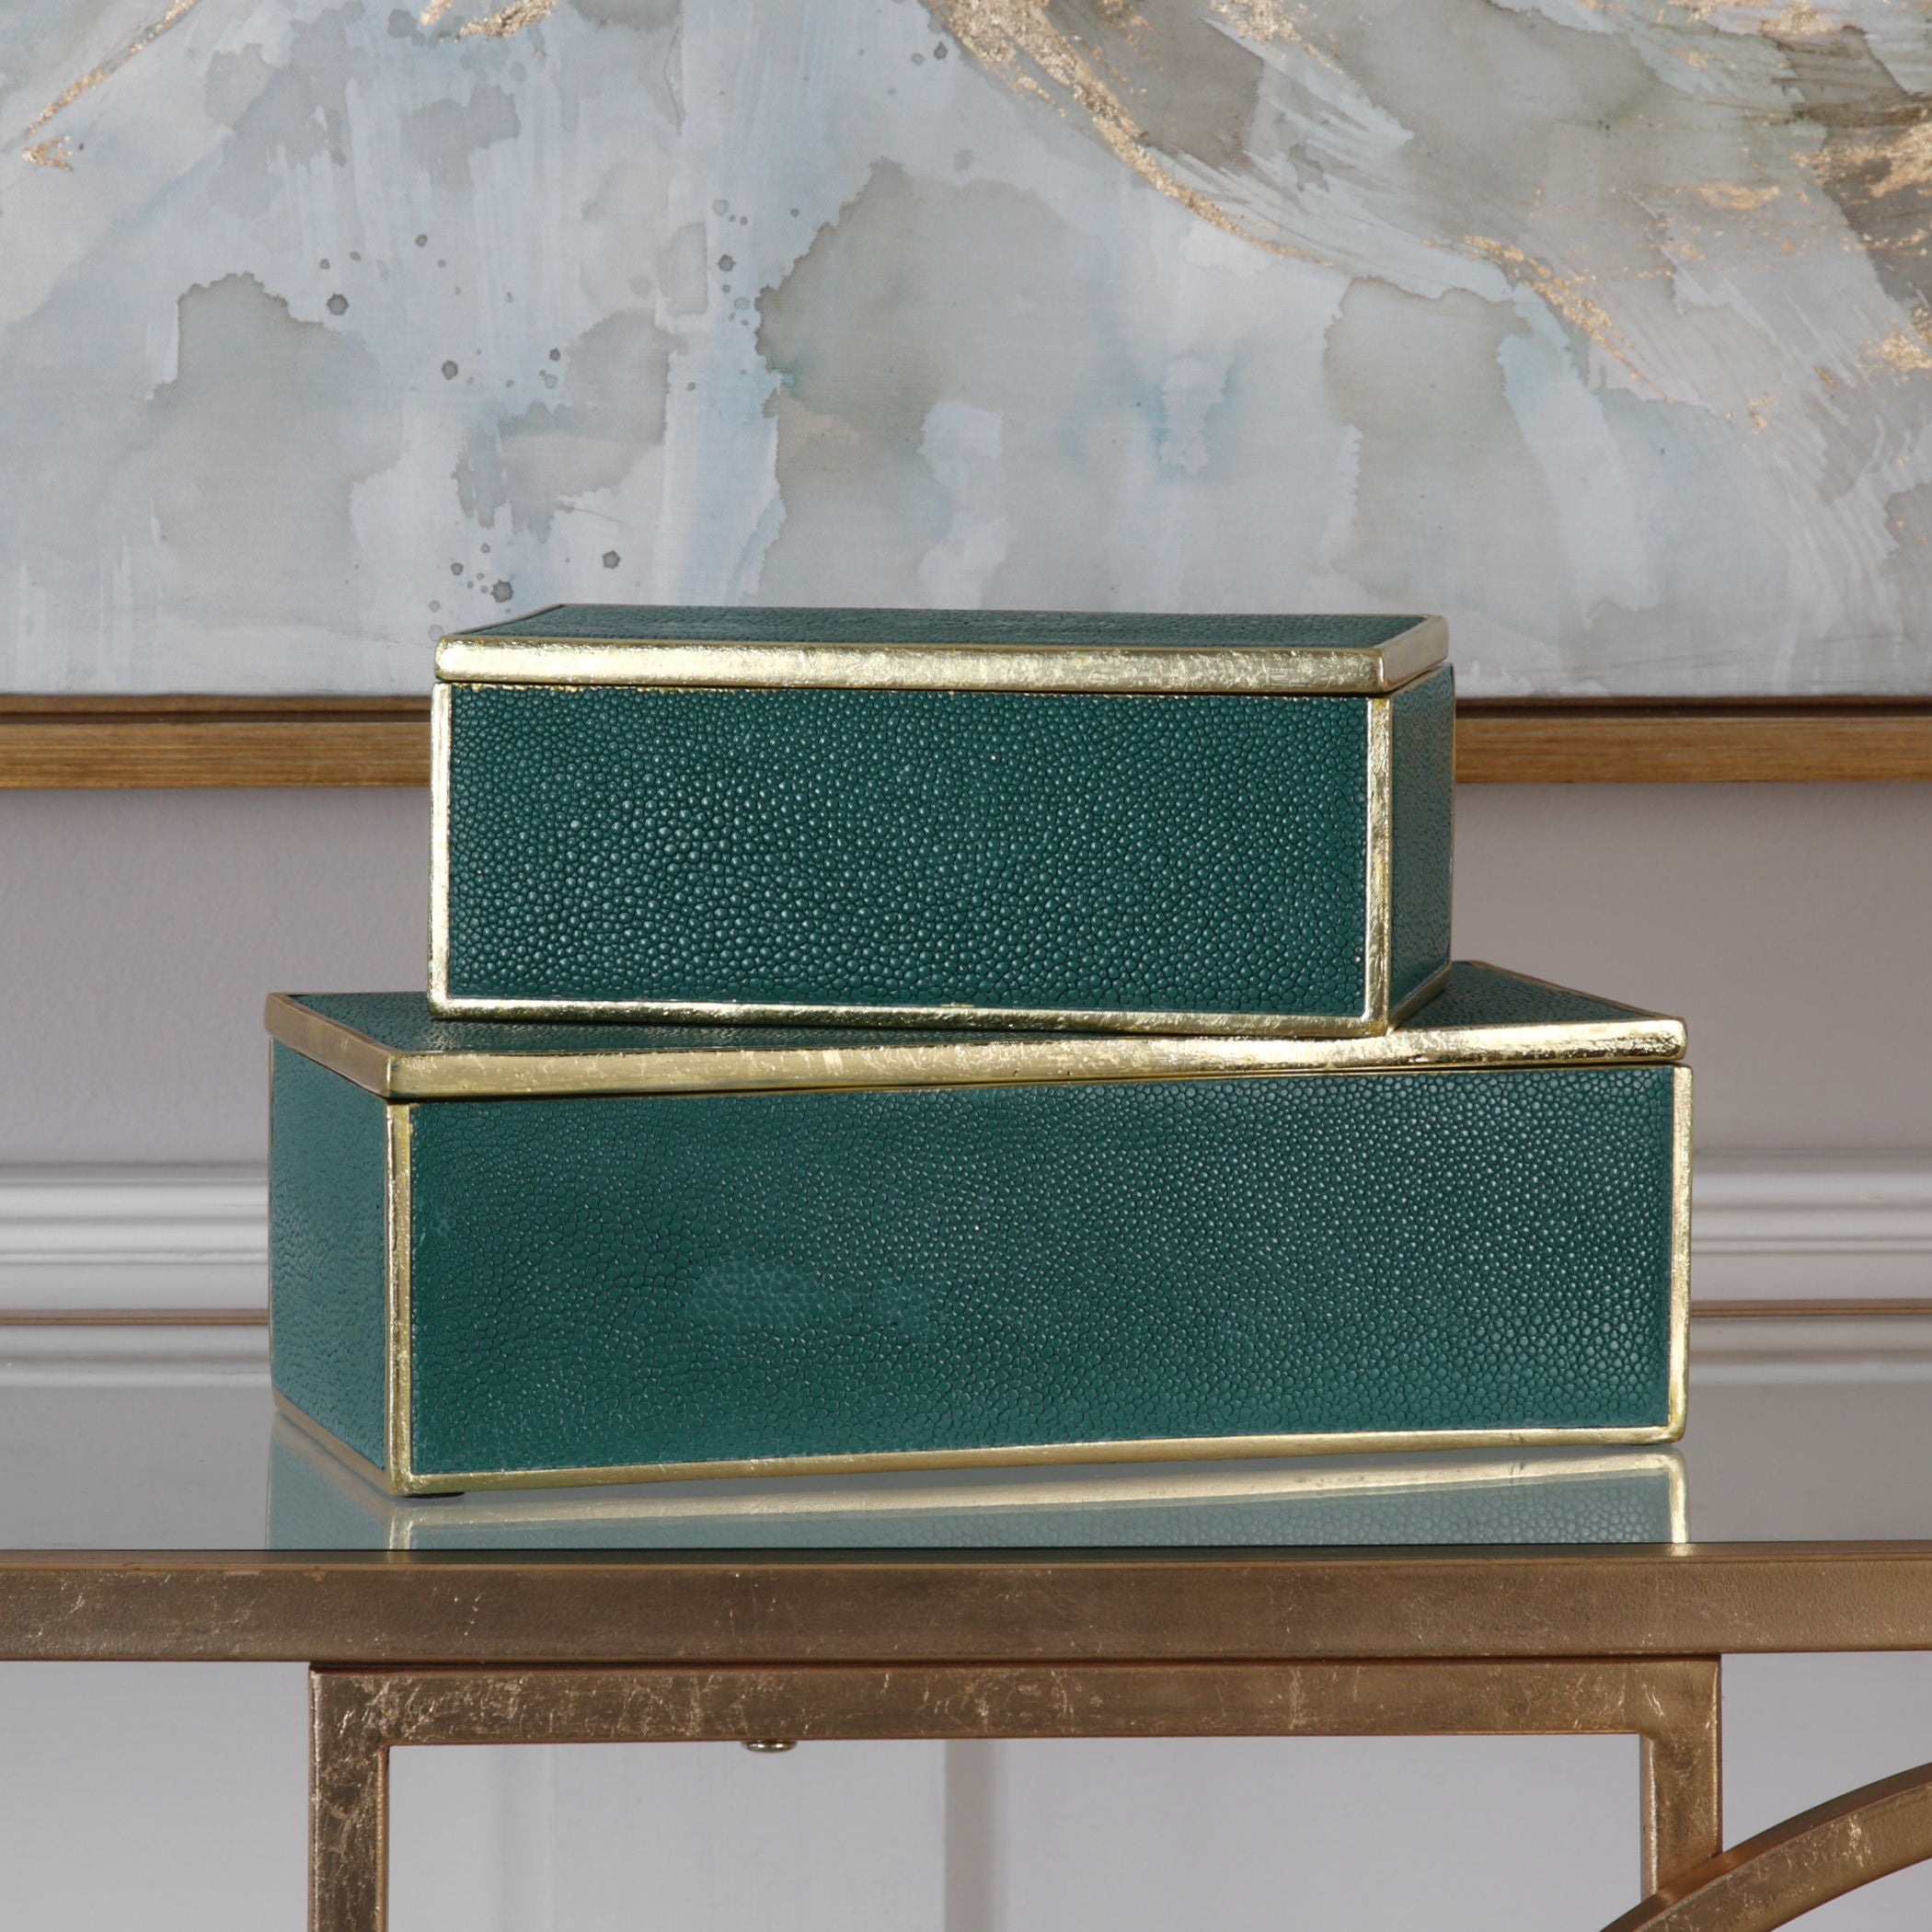 Karis - Boxes (Set of 2) - Emerald Green